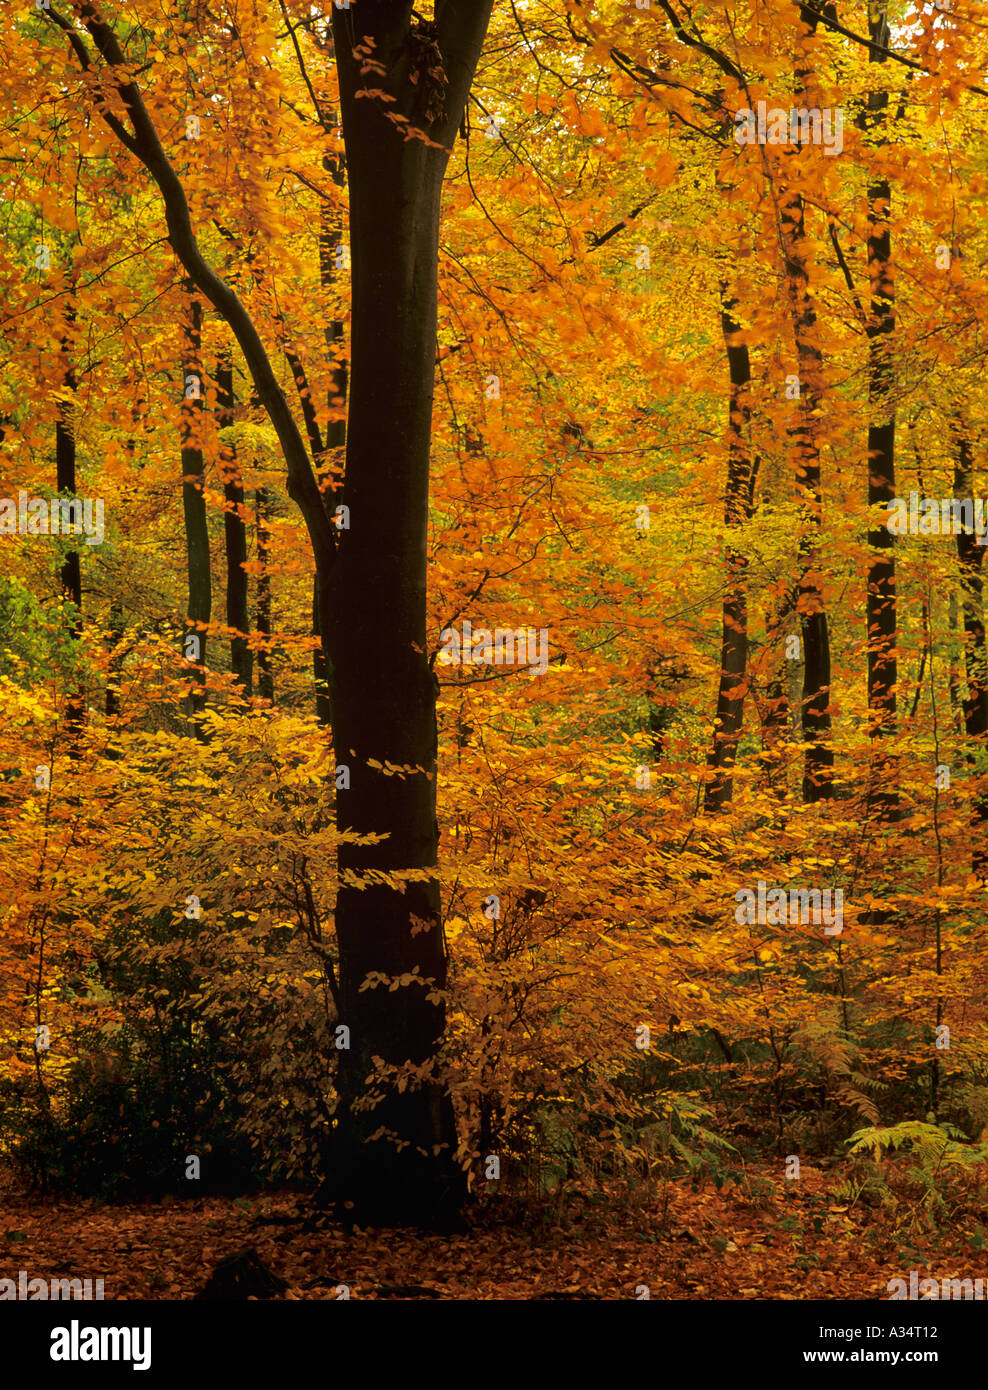 Herbst Laub an Bäumen in Buche Fagus sylvatica im englischen Landschaft Wald im November Alice holt Wald Bentley Hampshire England Großbritannien Großbritannien Stockfoto